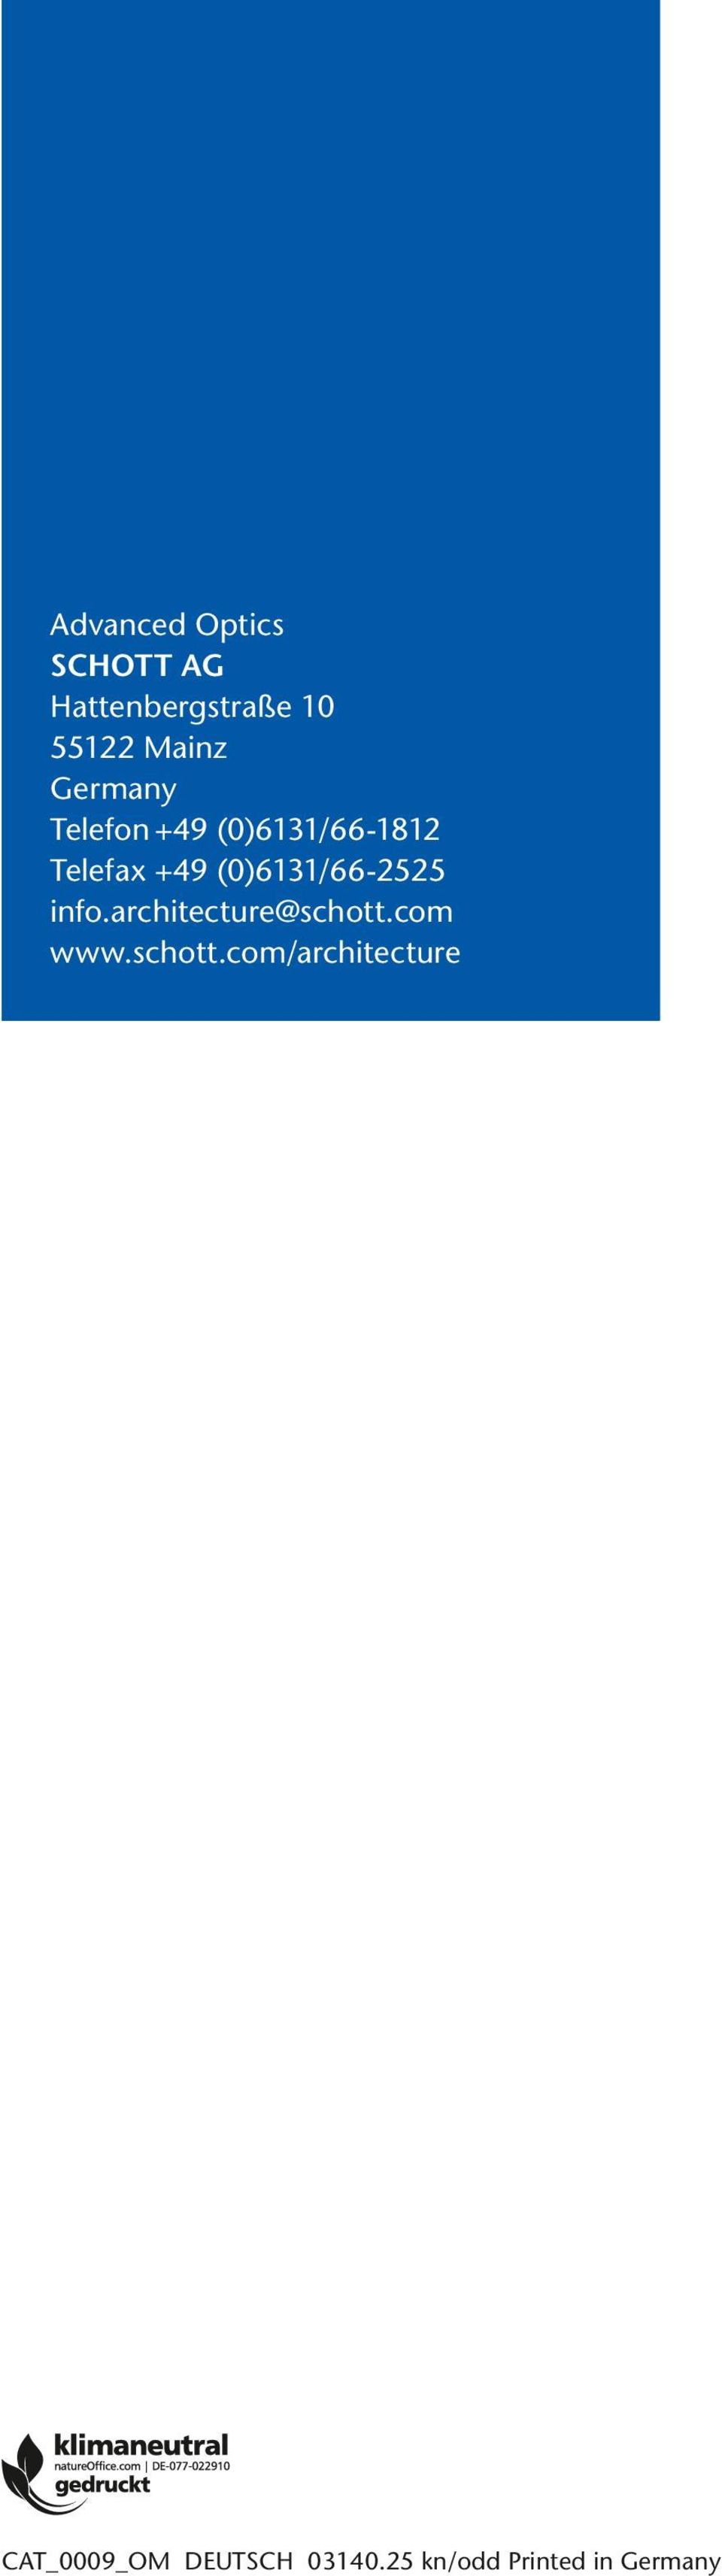 (0)6131/66-2525 info.architecture@schott.